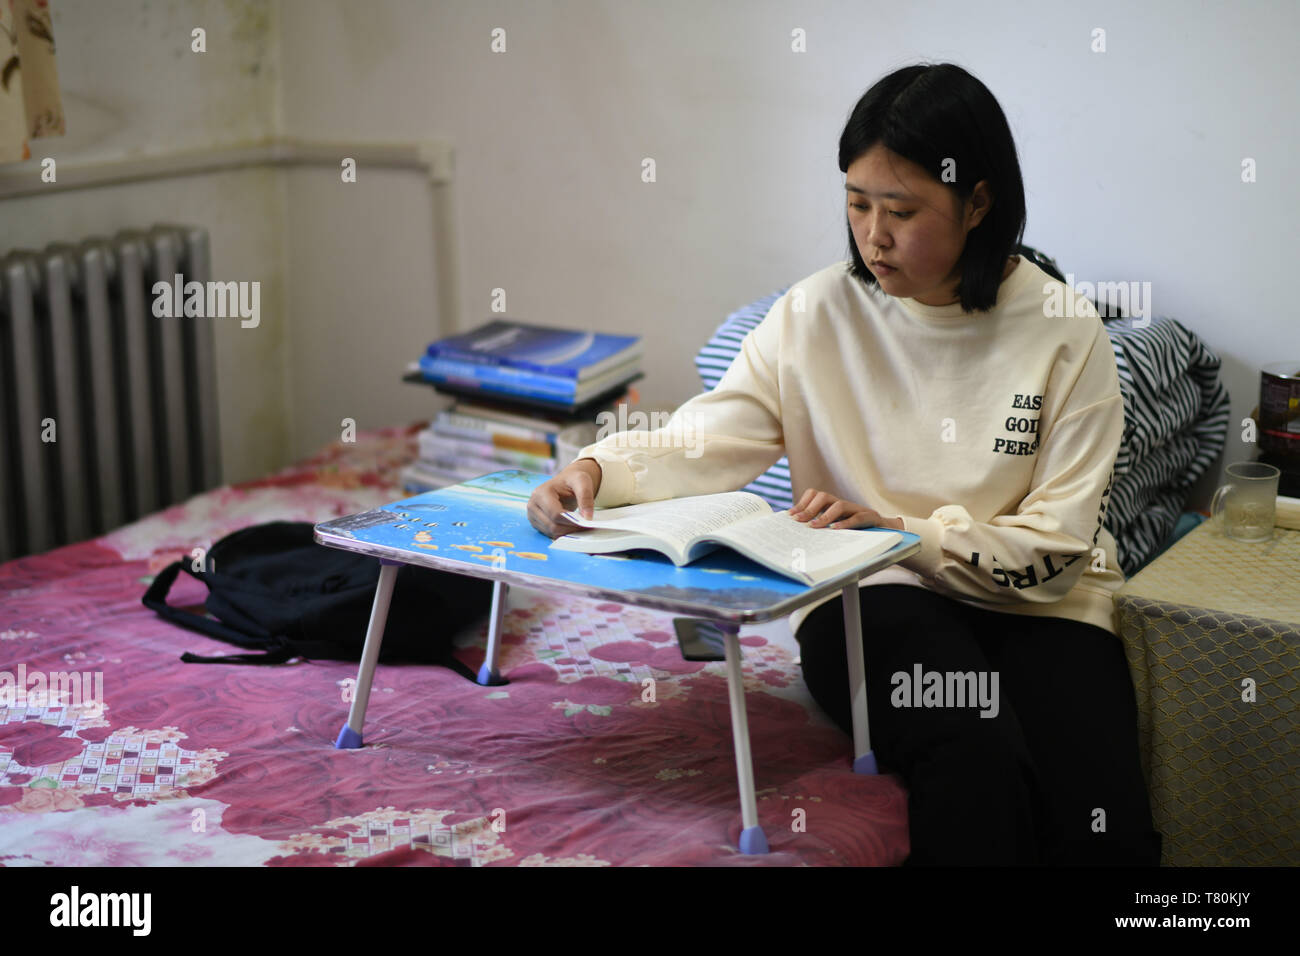 (190510) - HARBIN, 10. Mai 2019 (Xinhua) - Zhao tingting Studien an ihrem Wohnsitz in Harbin, im Nordosten der chinesischen Provinz Heilongjiang, am 9. Mai 2019. Zhao Tingting, ursprünglich aus dem Norden Chinas Innere Mongolei Autonome Region, ist ein Neuling von Harbin Engineering University. Angeborene leiden Myasthenischem Syndrom (CMS, auch als Muskelschwäche bekannt), hat sie in einem Rollstuhl zu sitzen und viel mehr Aufwand als durchschnittliche Menschen. Nachdem bestimmt werden mit CMS, Qin nie gab ihr Traum, wollte sie in die Universität zu erhalten. Sie war dem Kollegium der Materialwissenschaft und Chem zugelassen Stockfoto